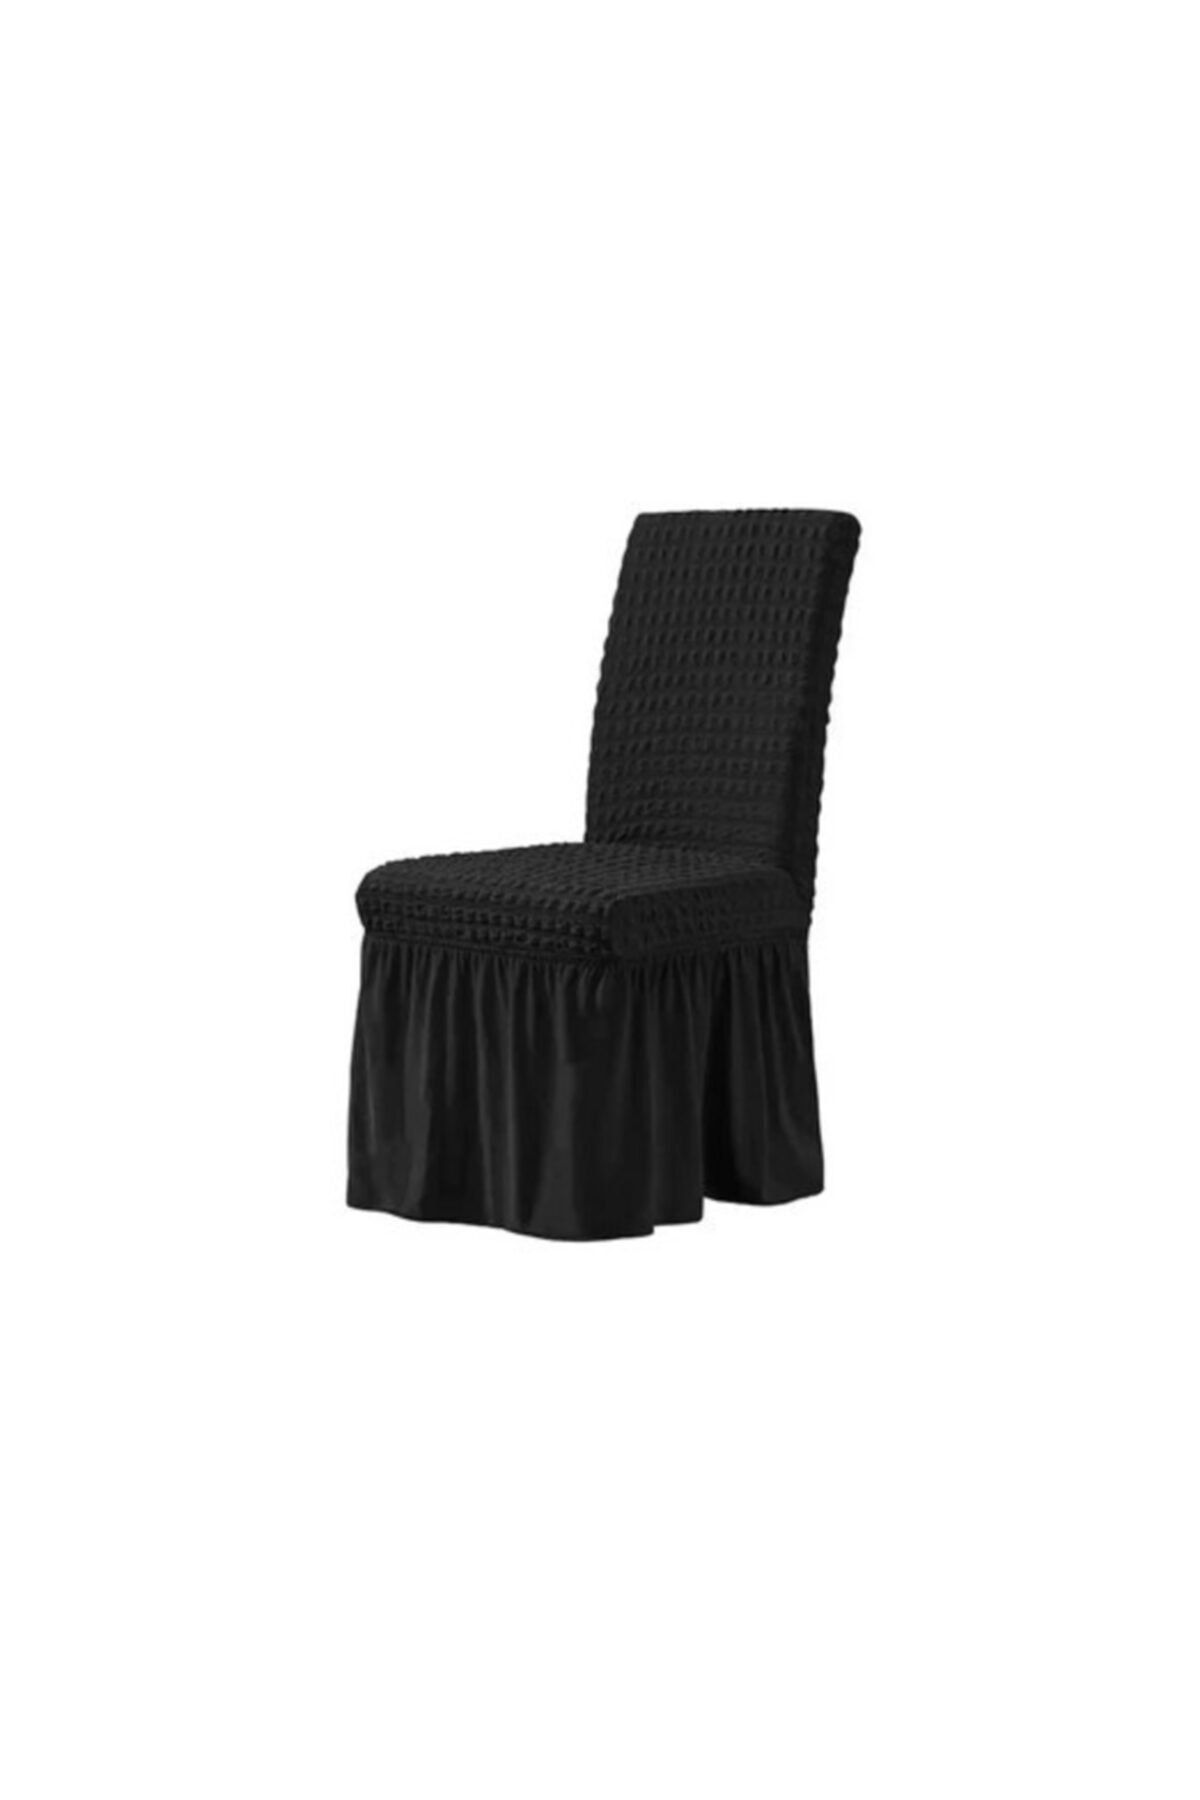 elgeyar Bürümcük Sandalye Örtüsü , Sandalye Kılıfı Etekli Siyah 1 Adet